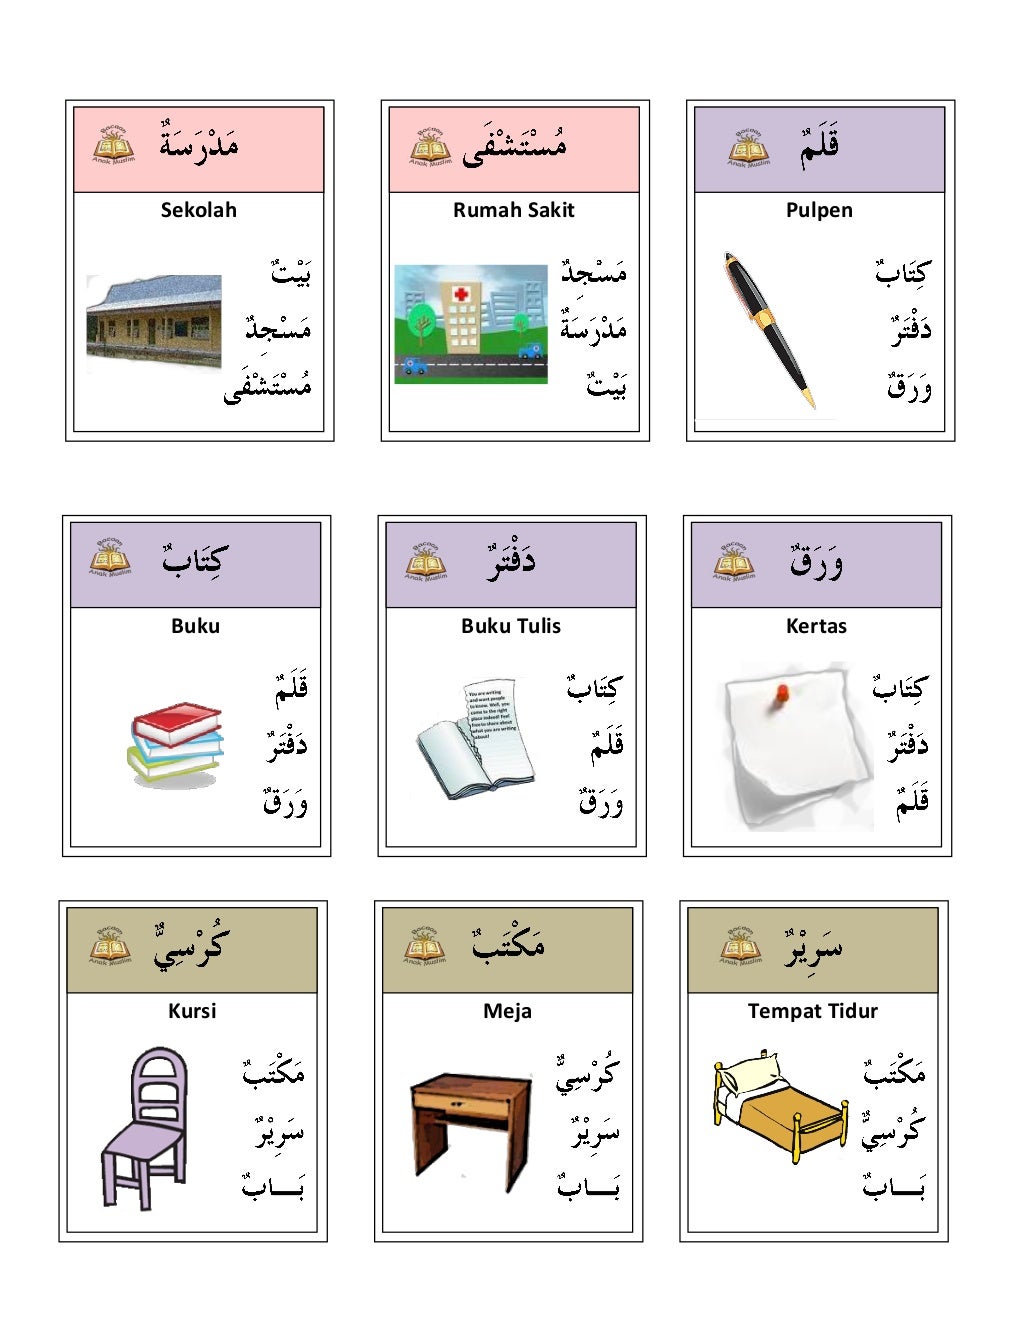  bahasa arab dengan gambar Kwartet arabiyyah 